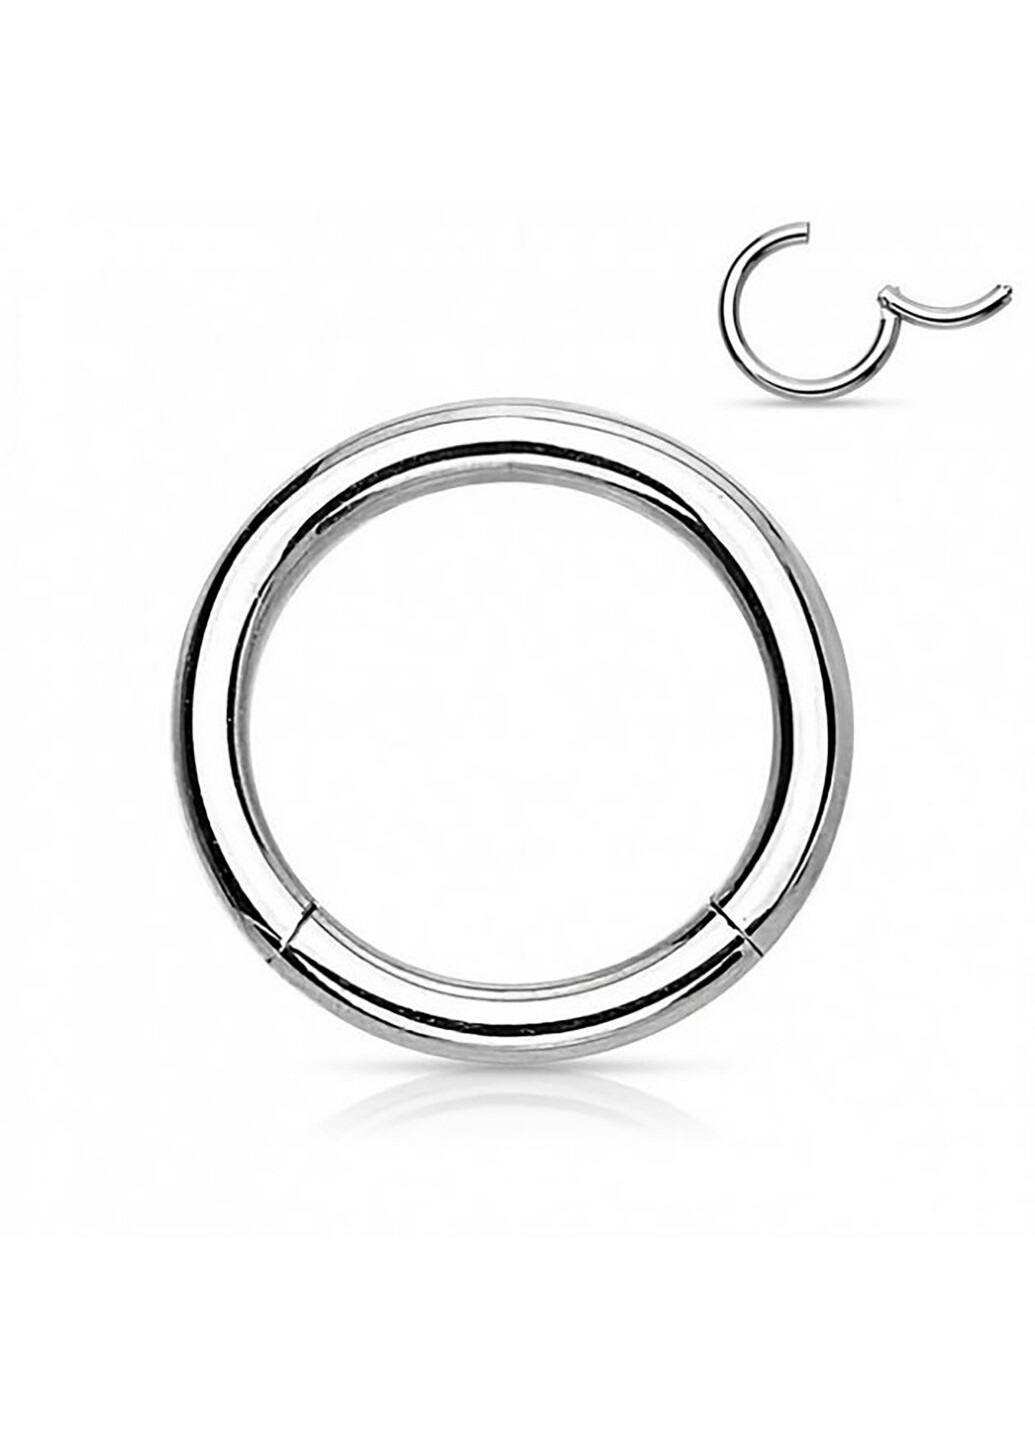 Универсальное кольцо - кликер из стали бренда PiercedFish диаметром 8 мм, толщиной 1,6 мм Spikes (257898132)